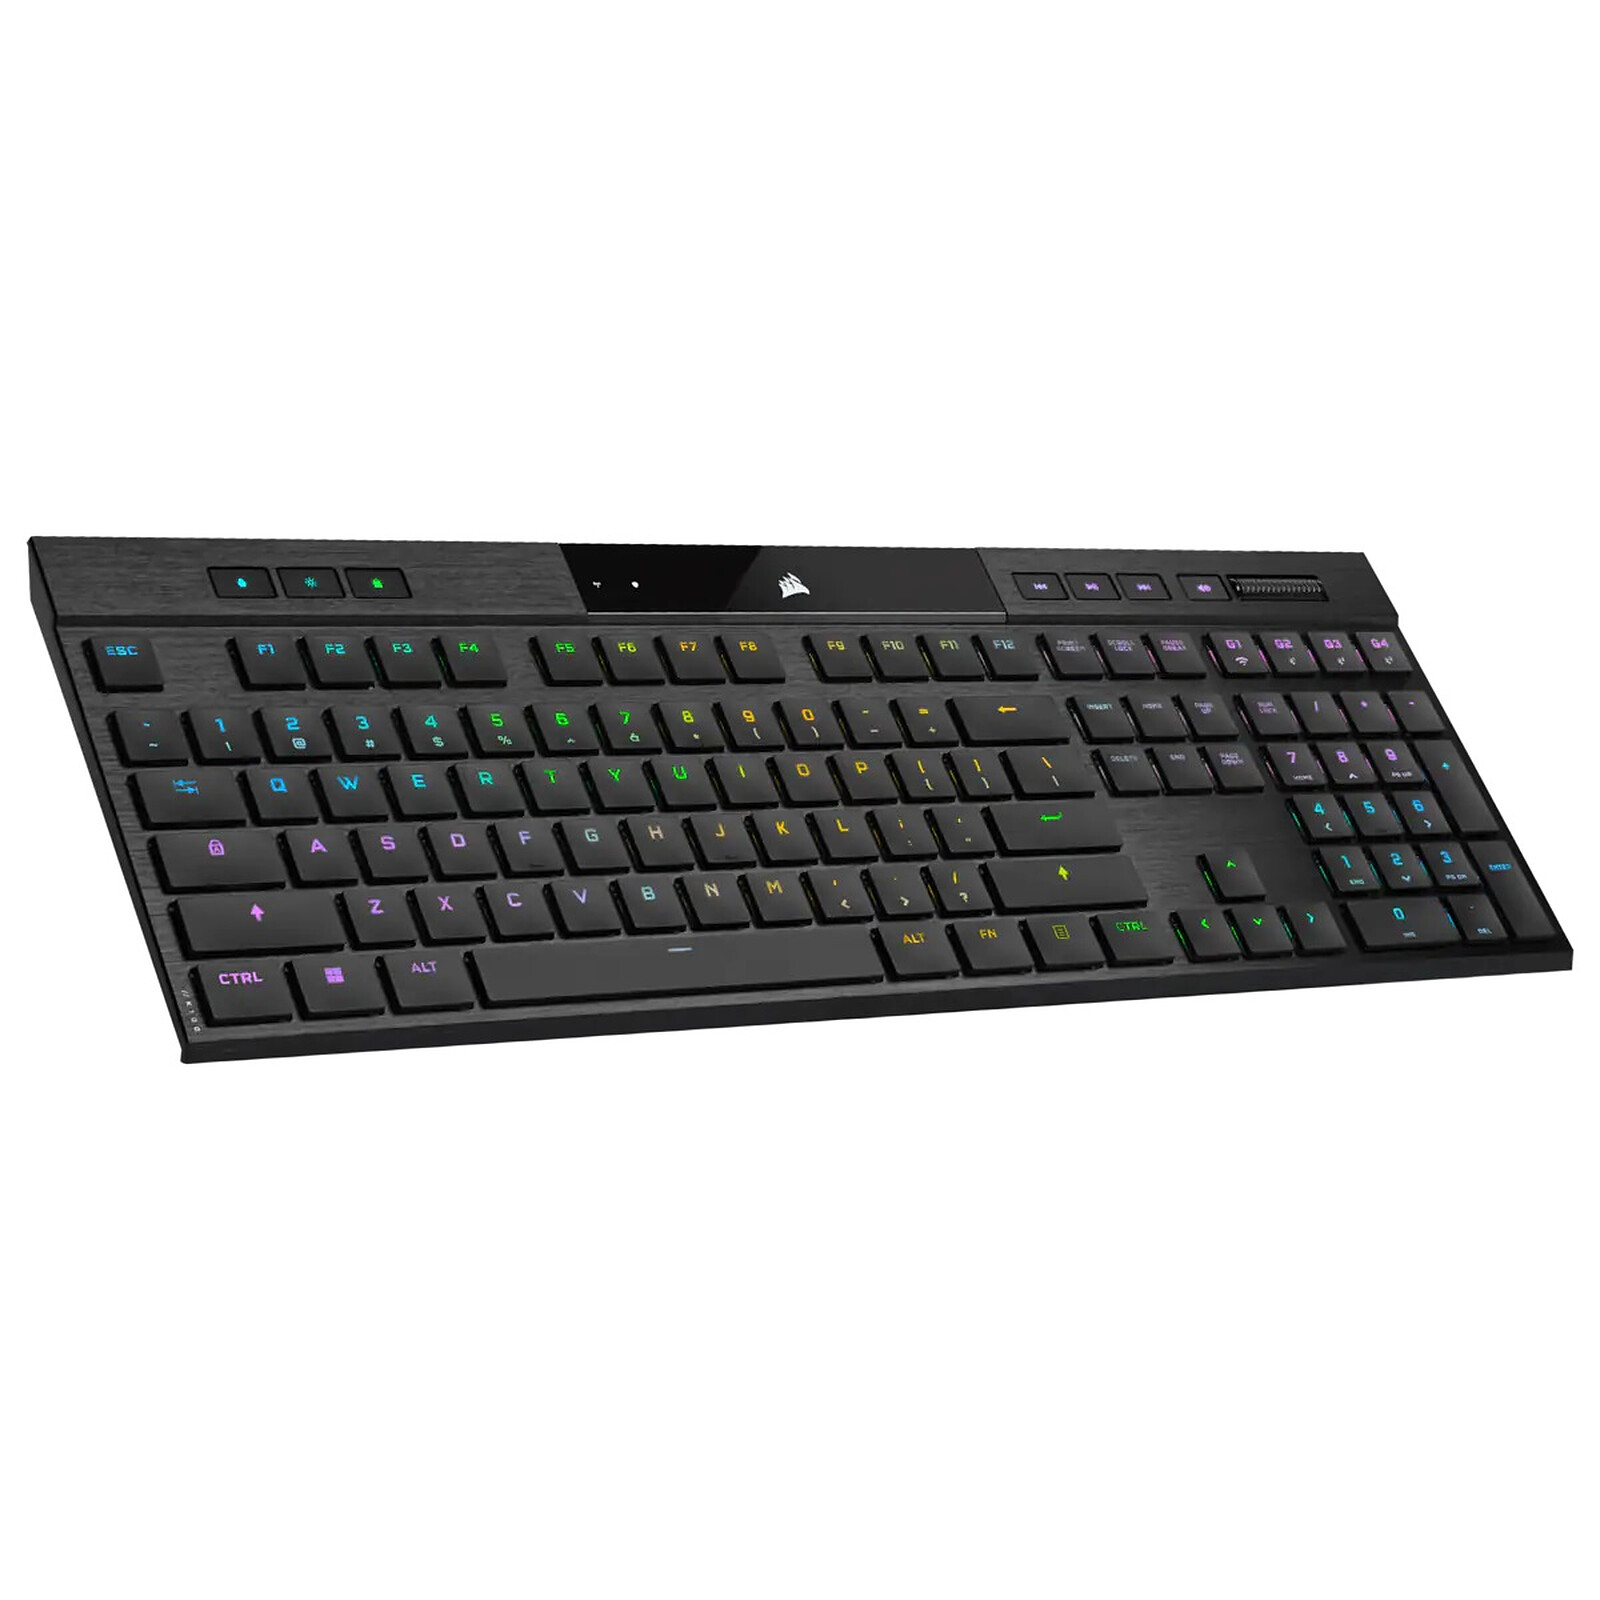 Promo : ce clavier gaming Corsair haut de gamme divise son prix par deux !  